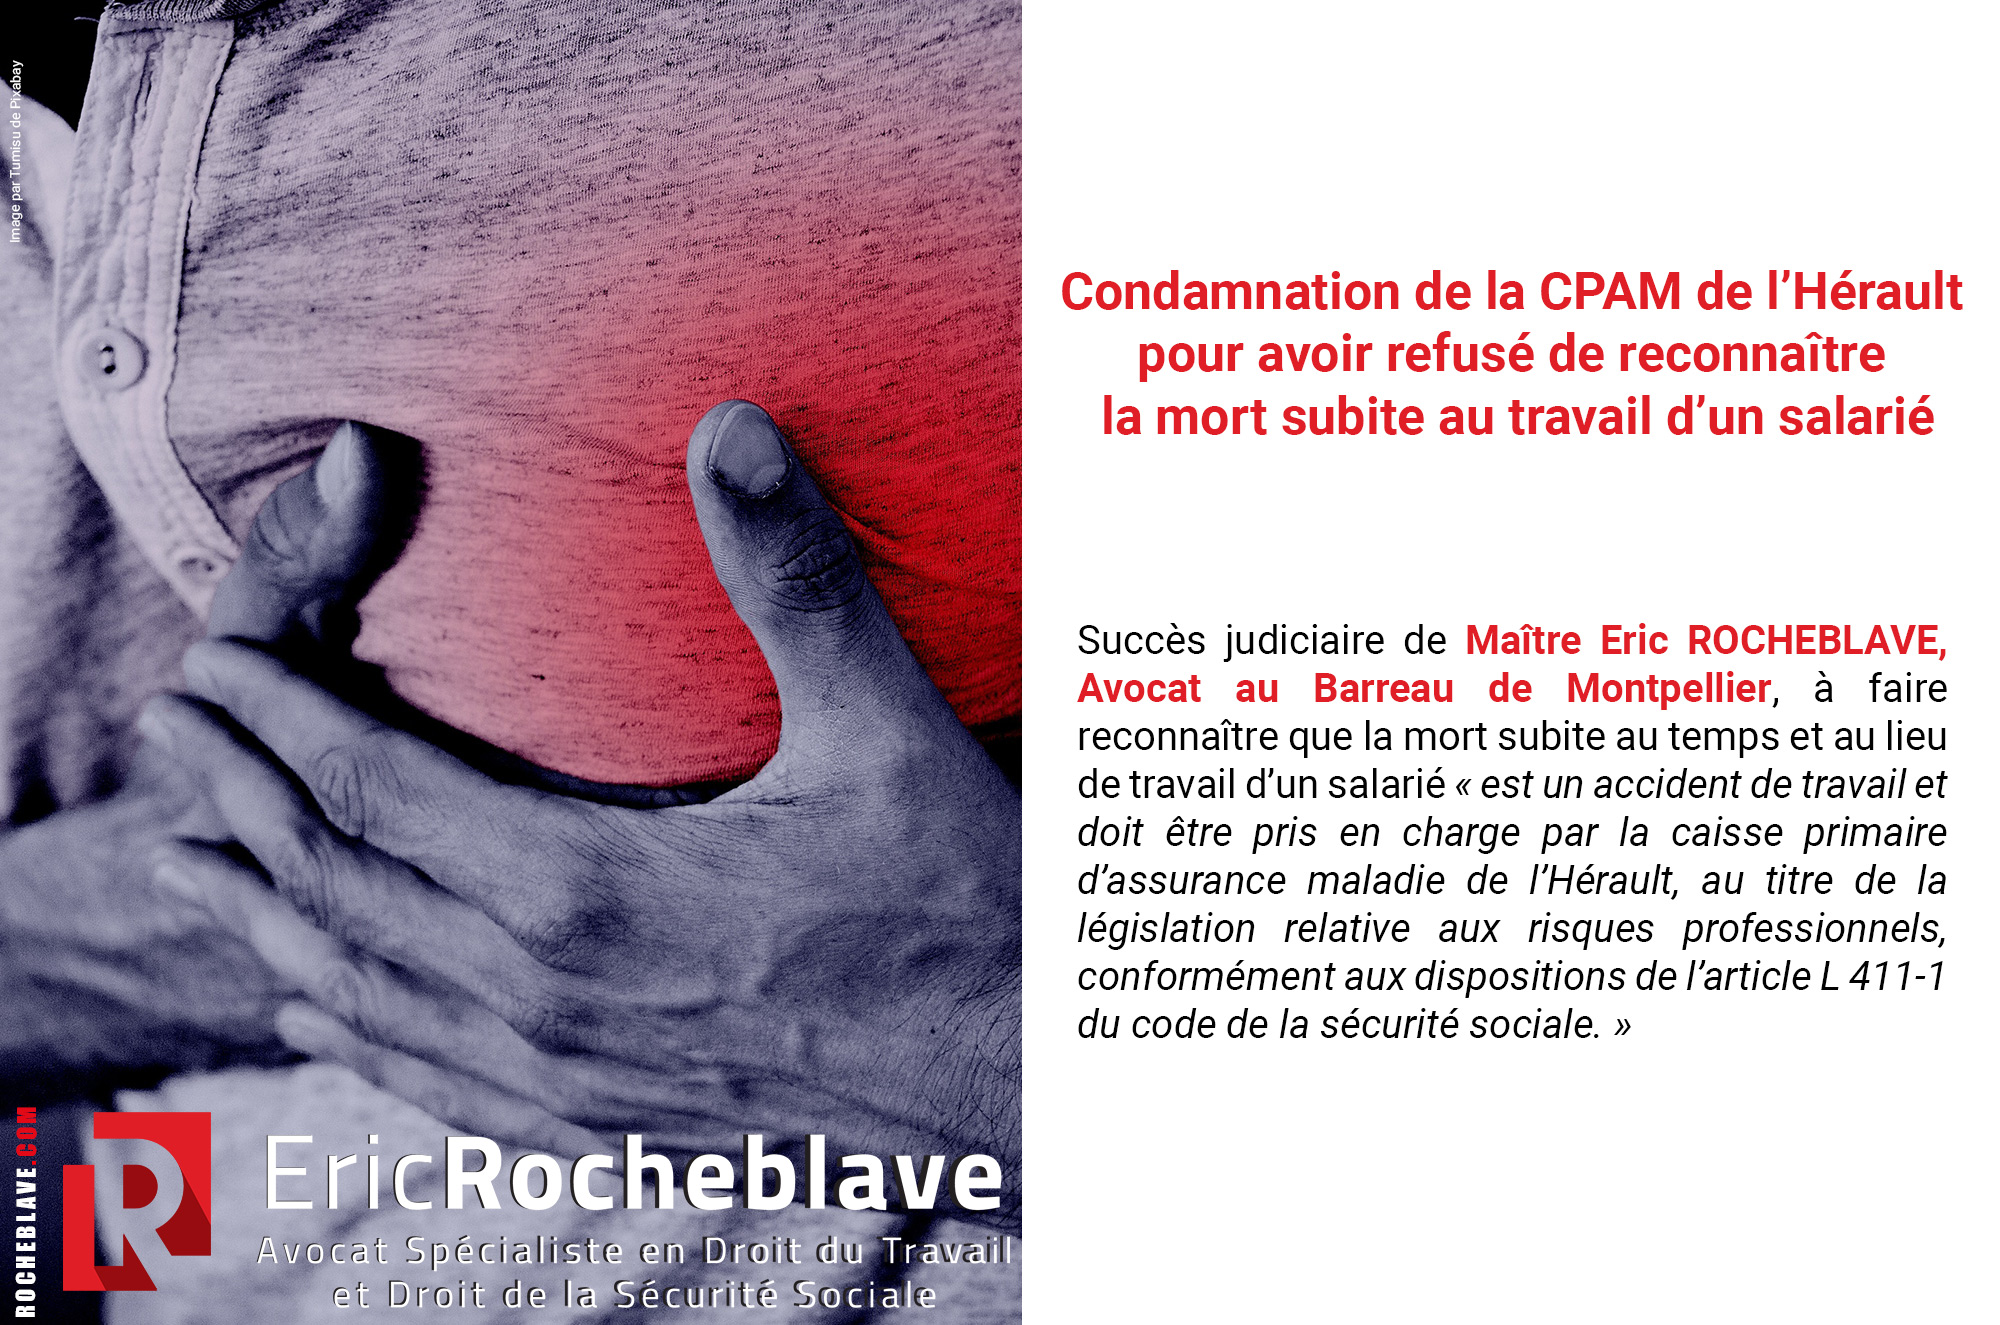 Condamnation de la CPAM de l’Hérault pour avoir refusé de reconnaître la mort subite au travail d’un salarié 